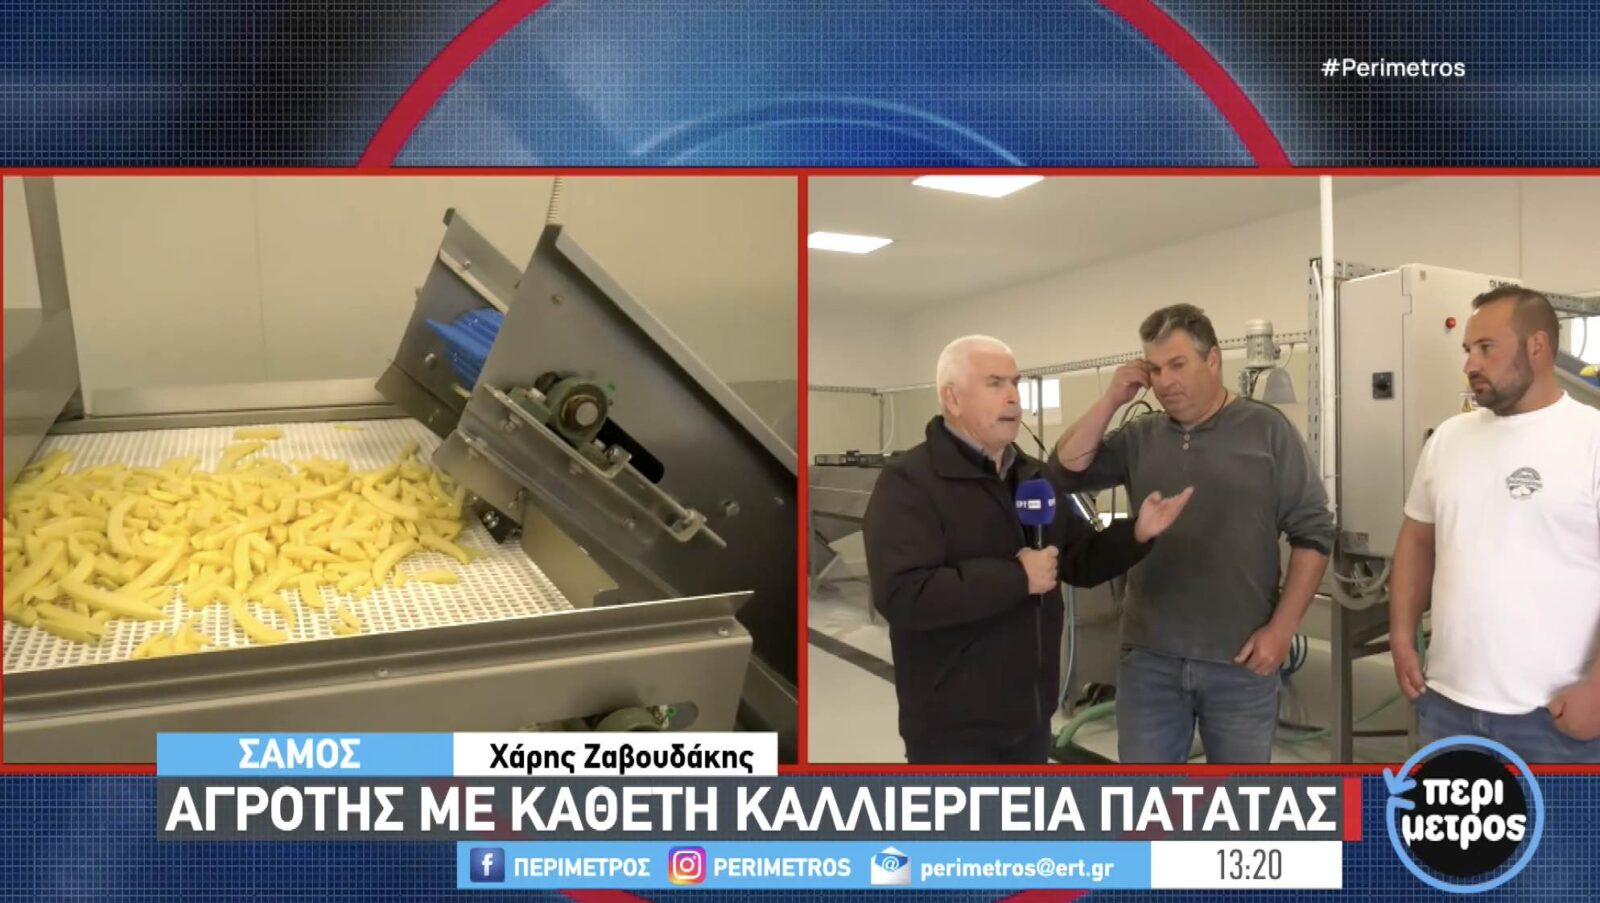 ΒΙΝΤΕΟ: Πρωτοποριακή μονάδα παραγωγής & μεταποίησης πατάτας στη Σάμο!